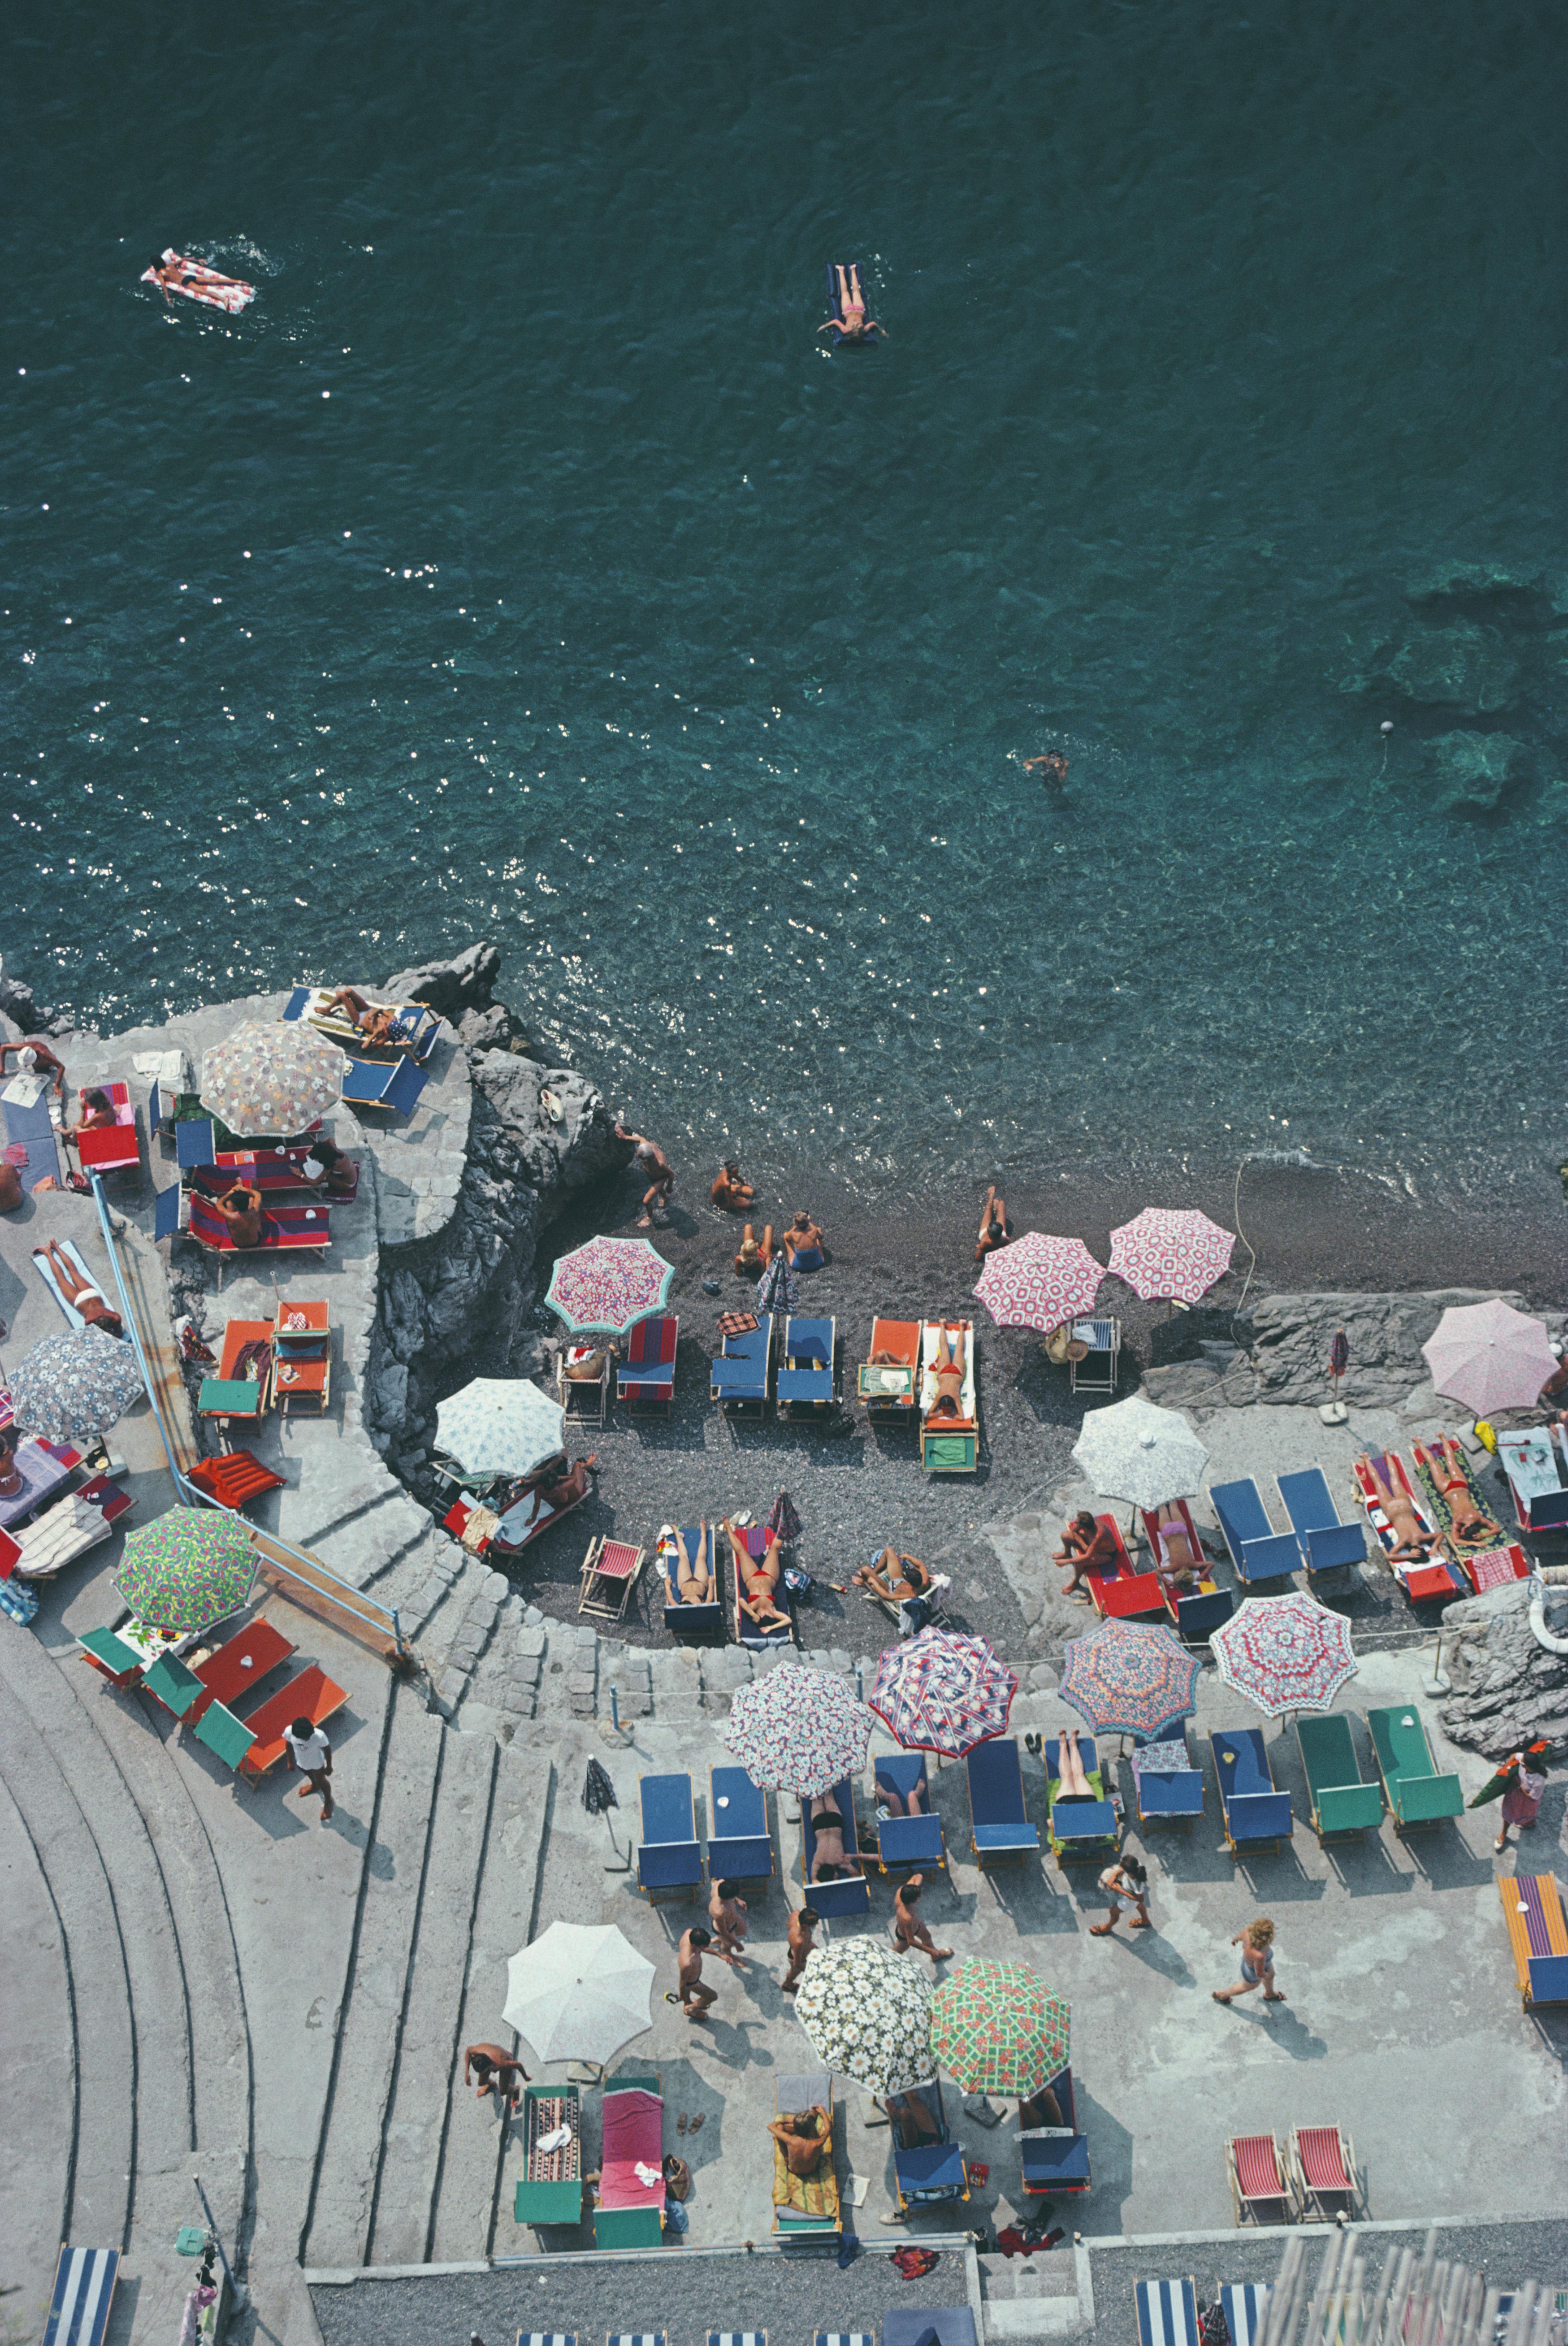 positano Beach' 1979 Slim Aarons Limitierte Nachlassausgabe Druck 

Blick von oben auf die Sonnenanbeter und Sonnenschirme am Strand von La Scogliera in Positano, Italien, 1979.

Hergestellt aus der Originalfolie
Mitgeliefertes Echtheitszertifikat